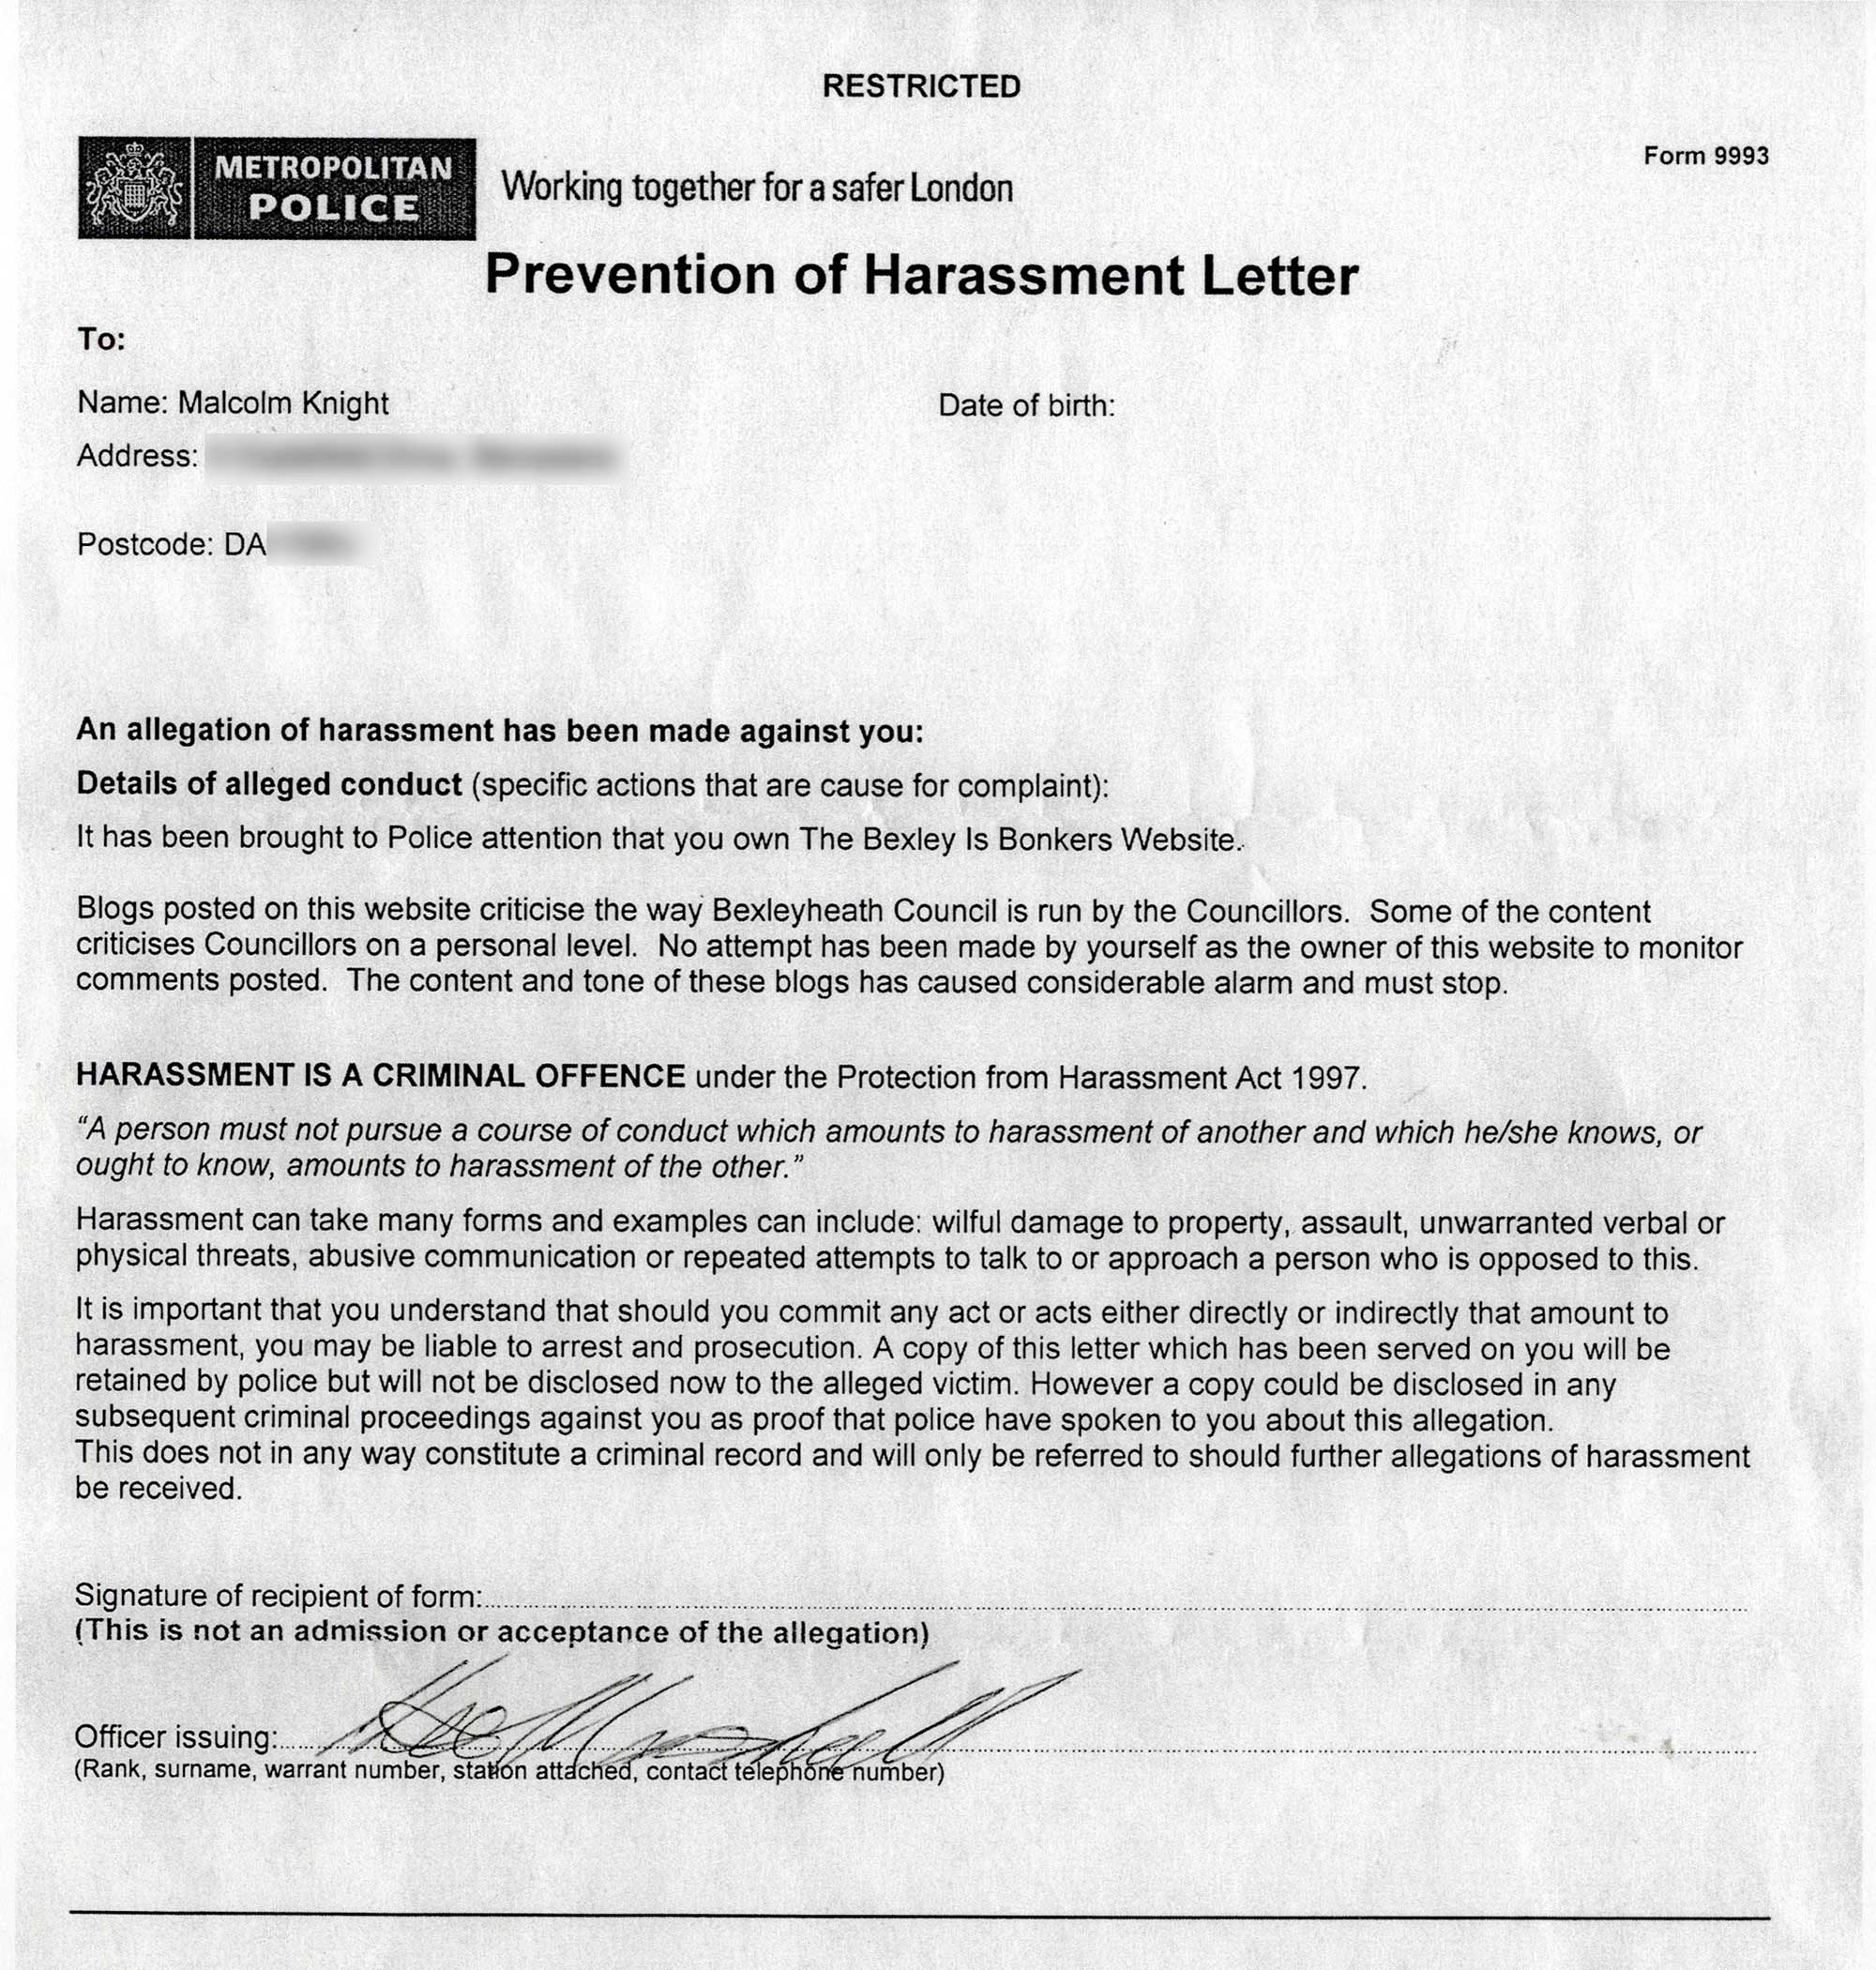 Letter alleging harassment